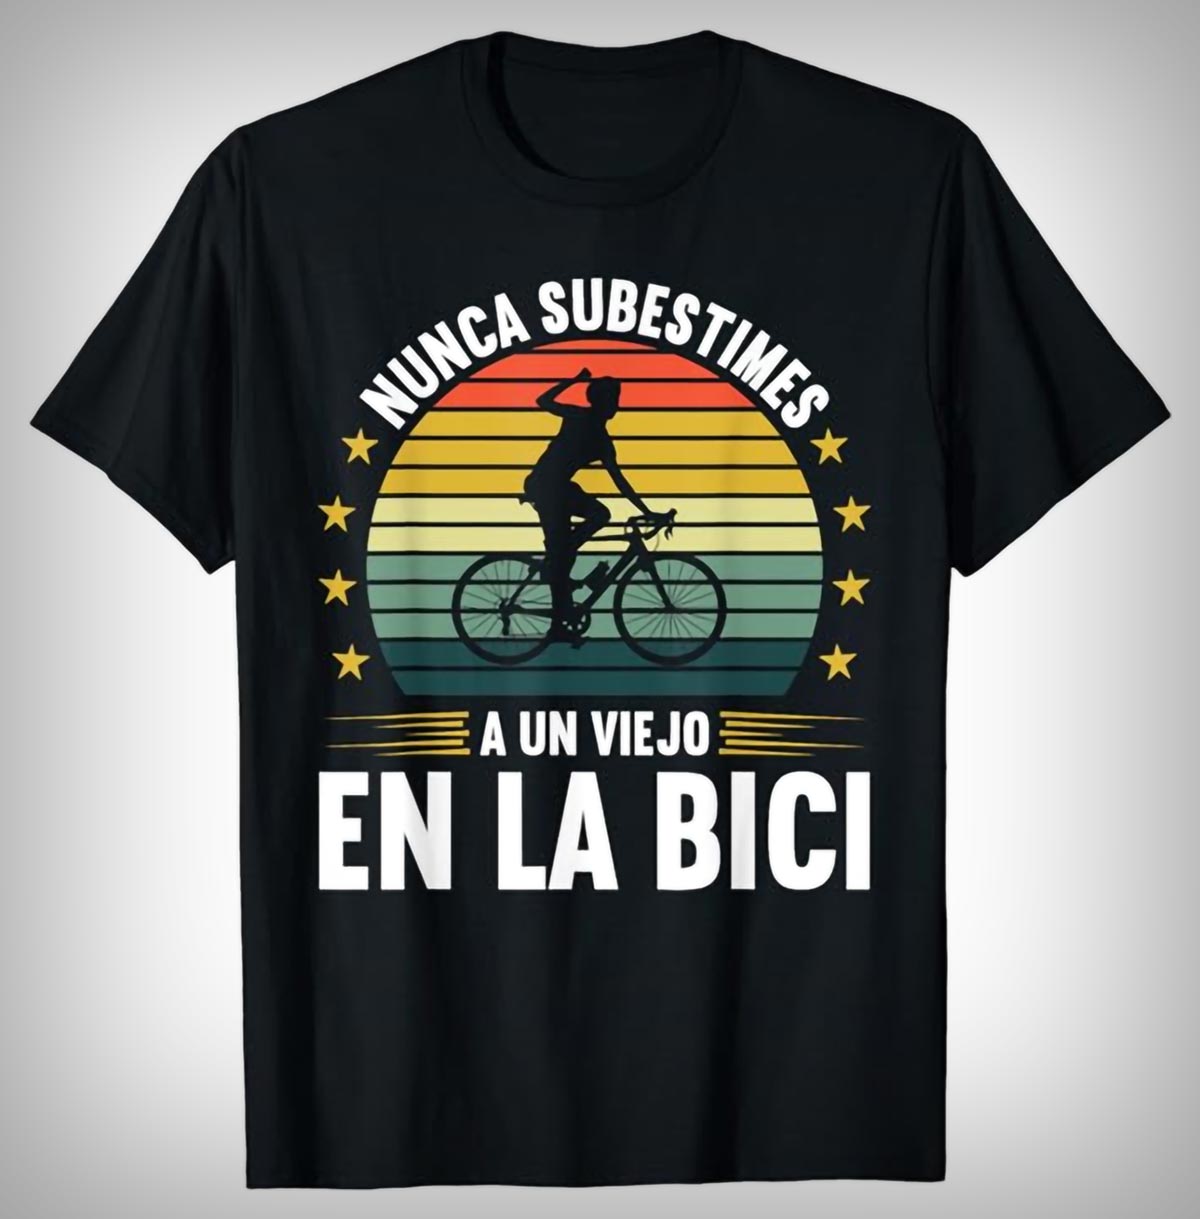 Diez camisetas de diseño divertido ideales para regalar a un ciclista